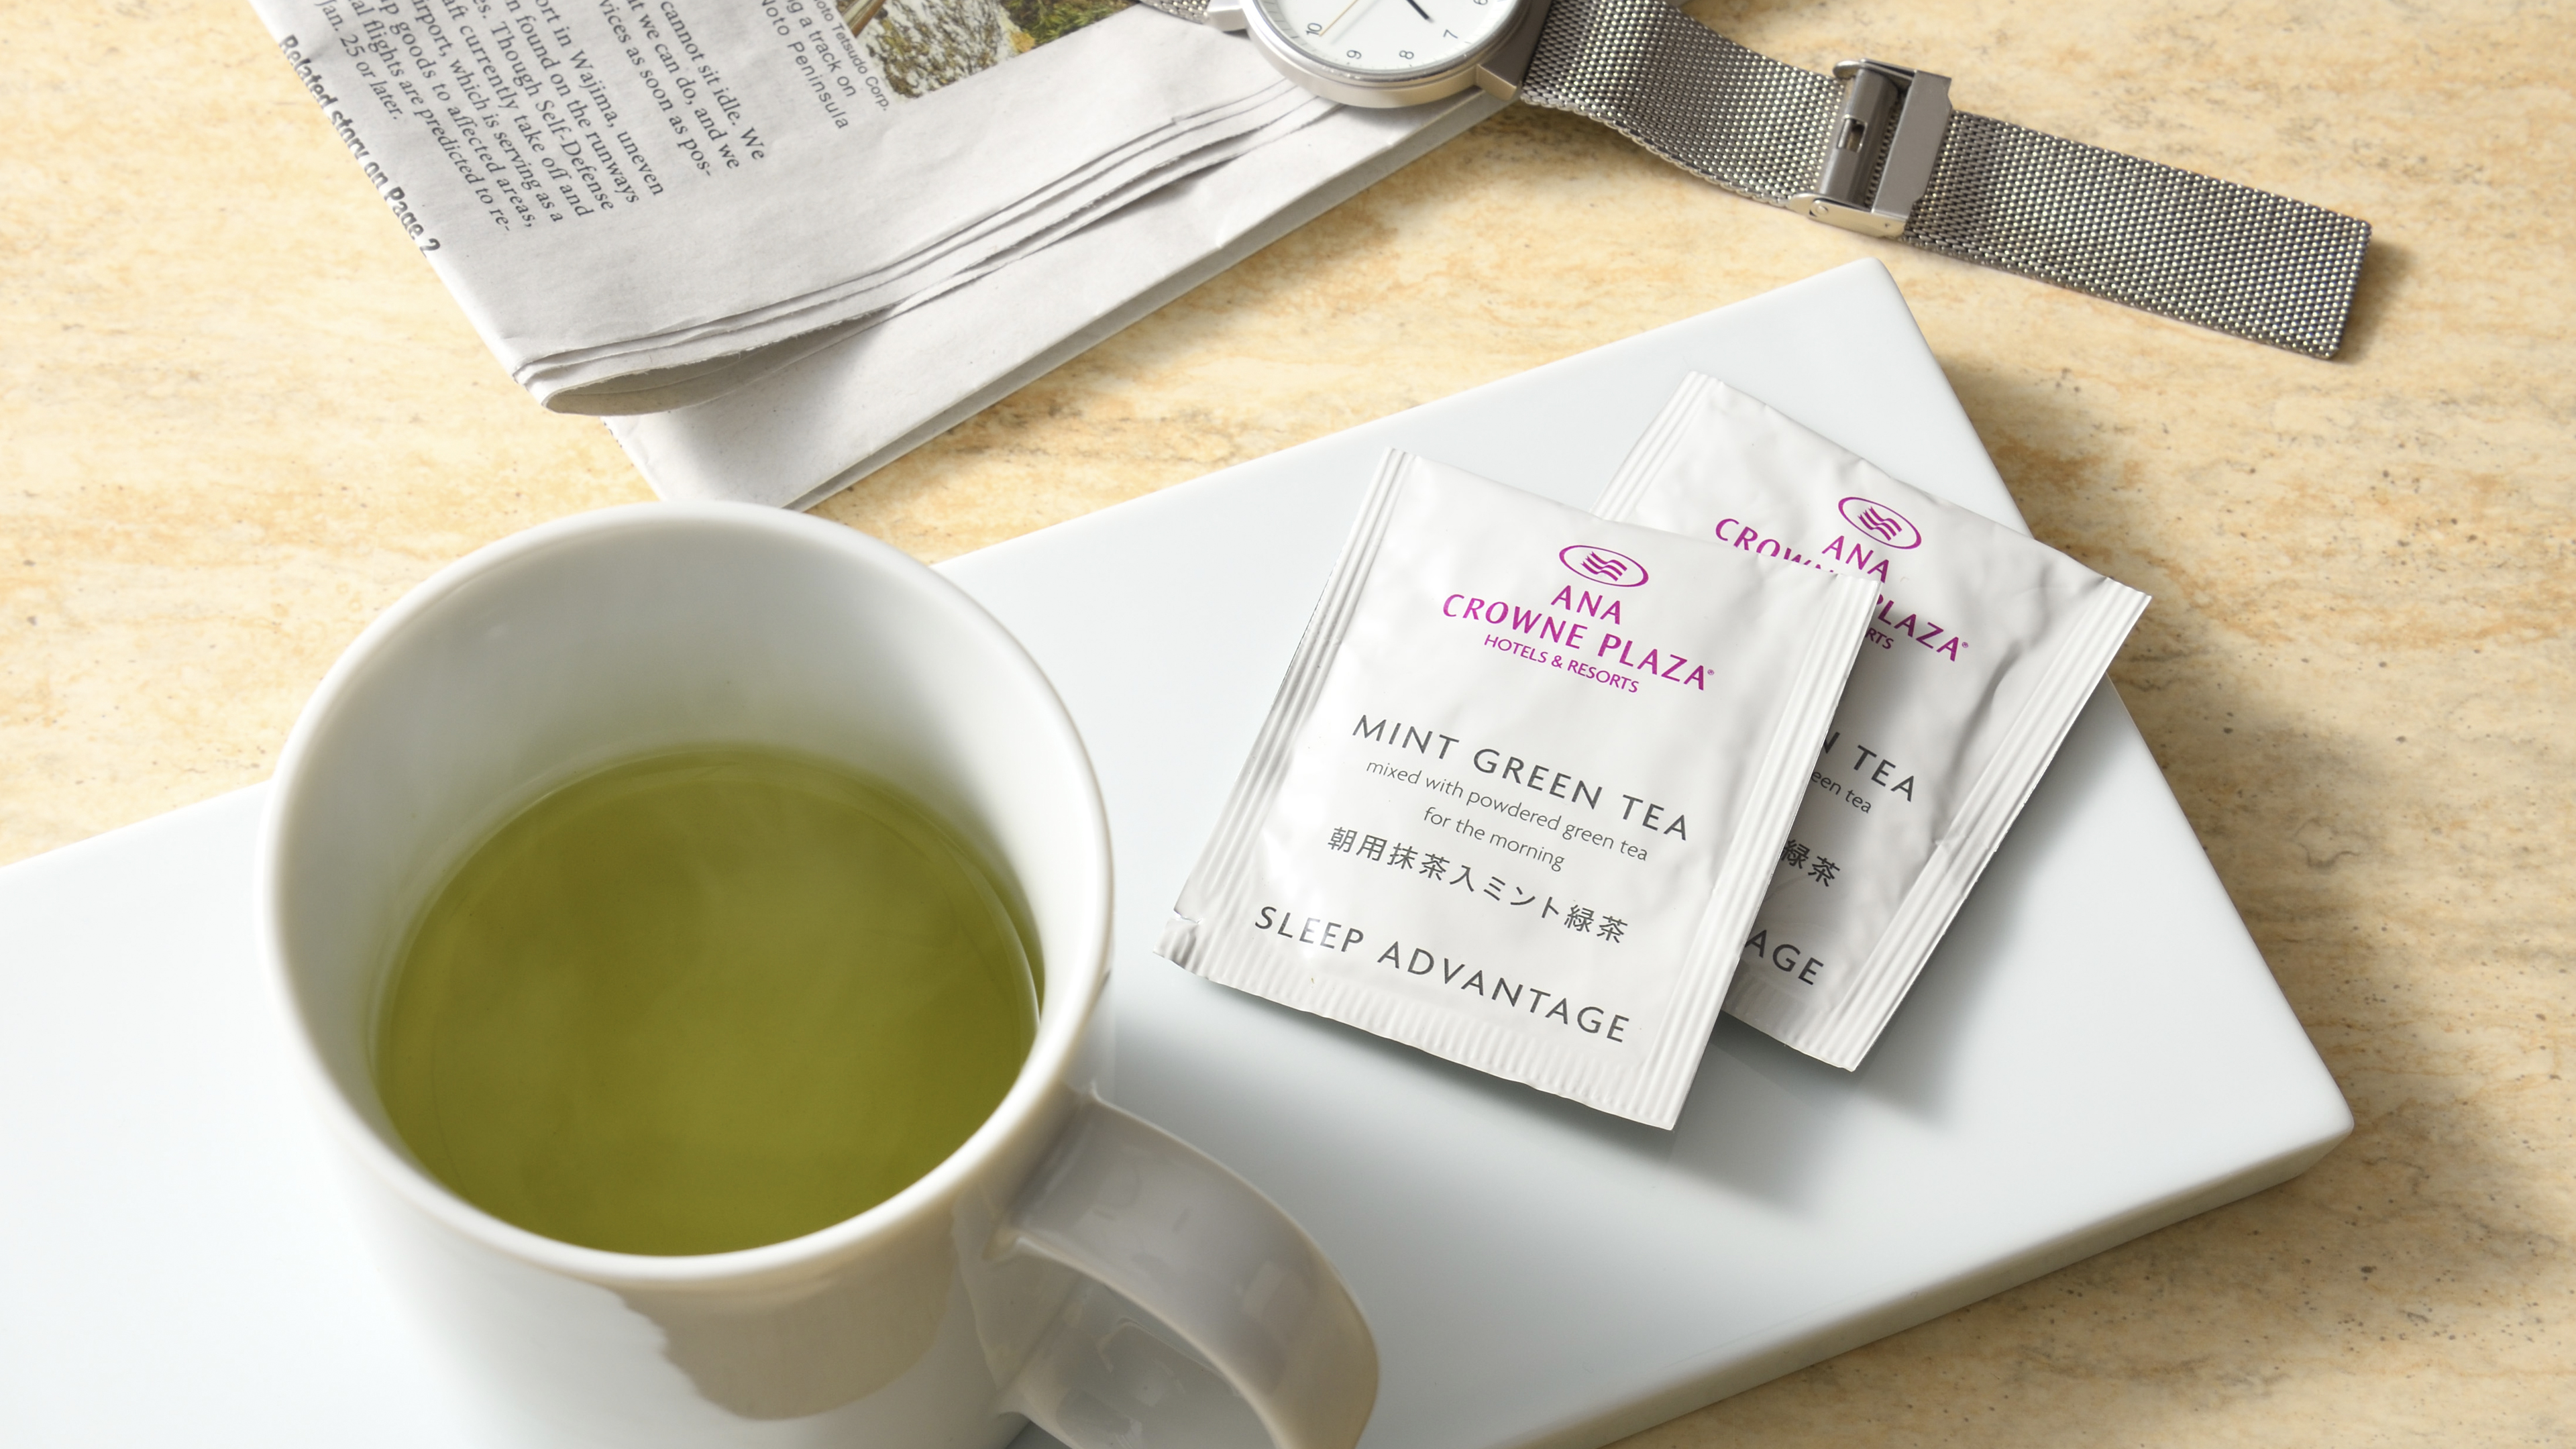 快眠のためのオリジナルブレンド茶/朝用抹茶入りミント緑茶